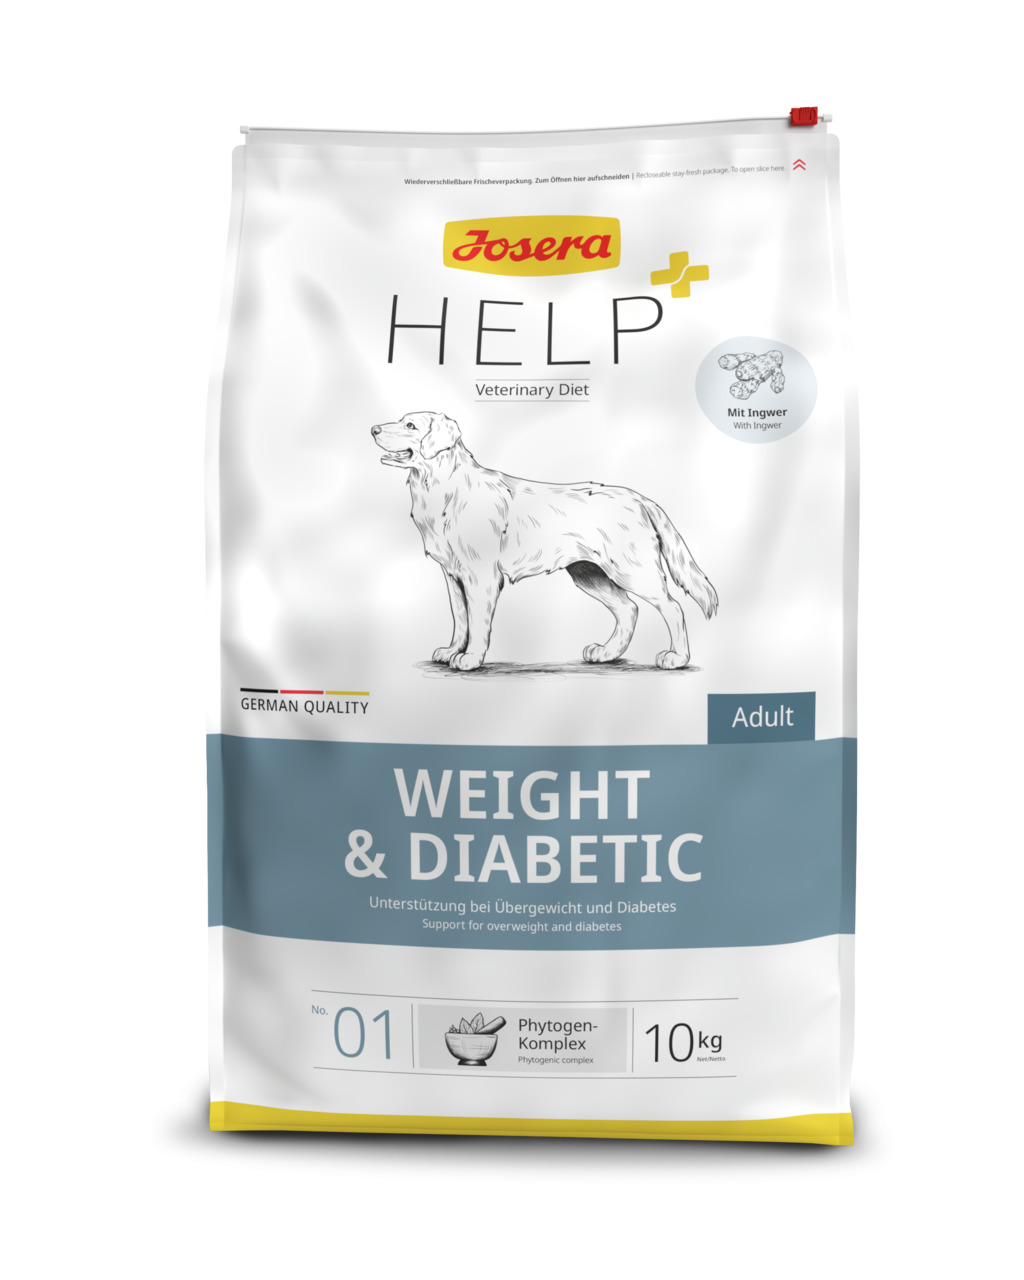 Josera Help Weight & Diabetic Hunde Trockenfutter 10 kg